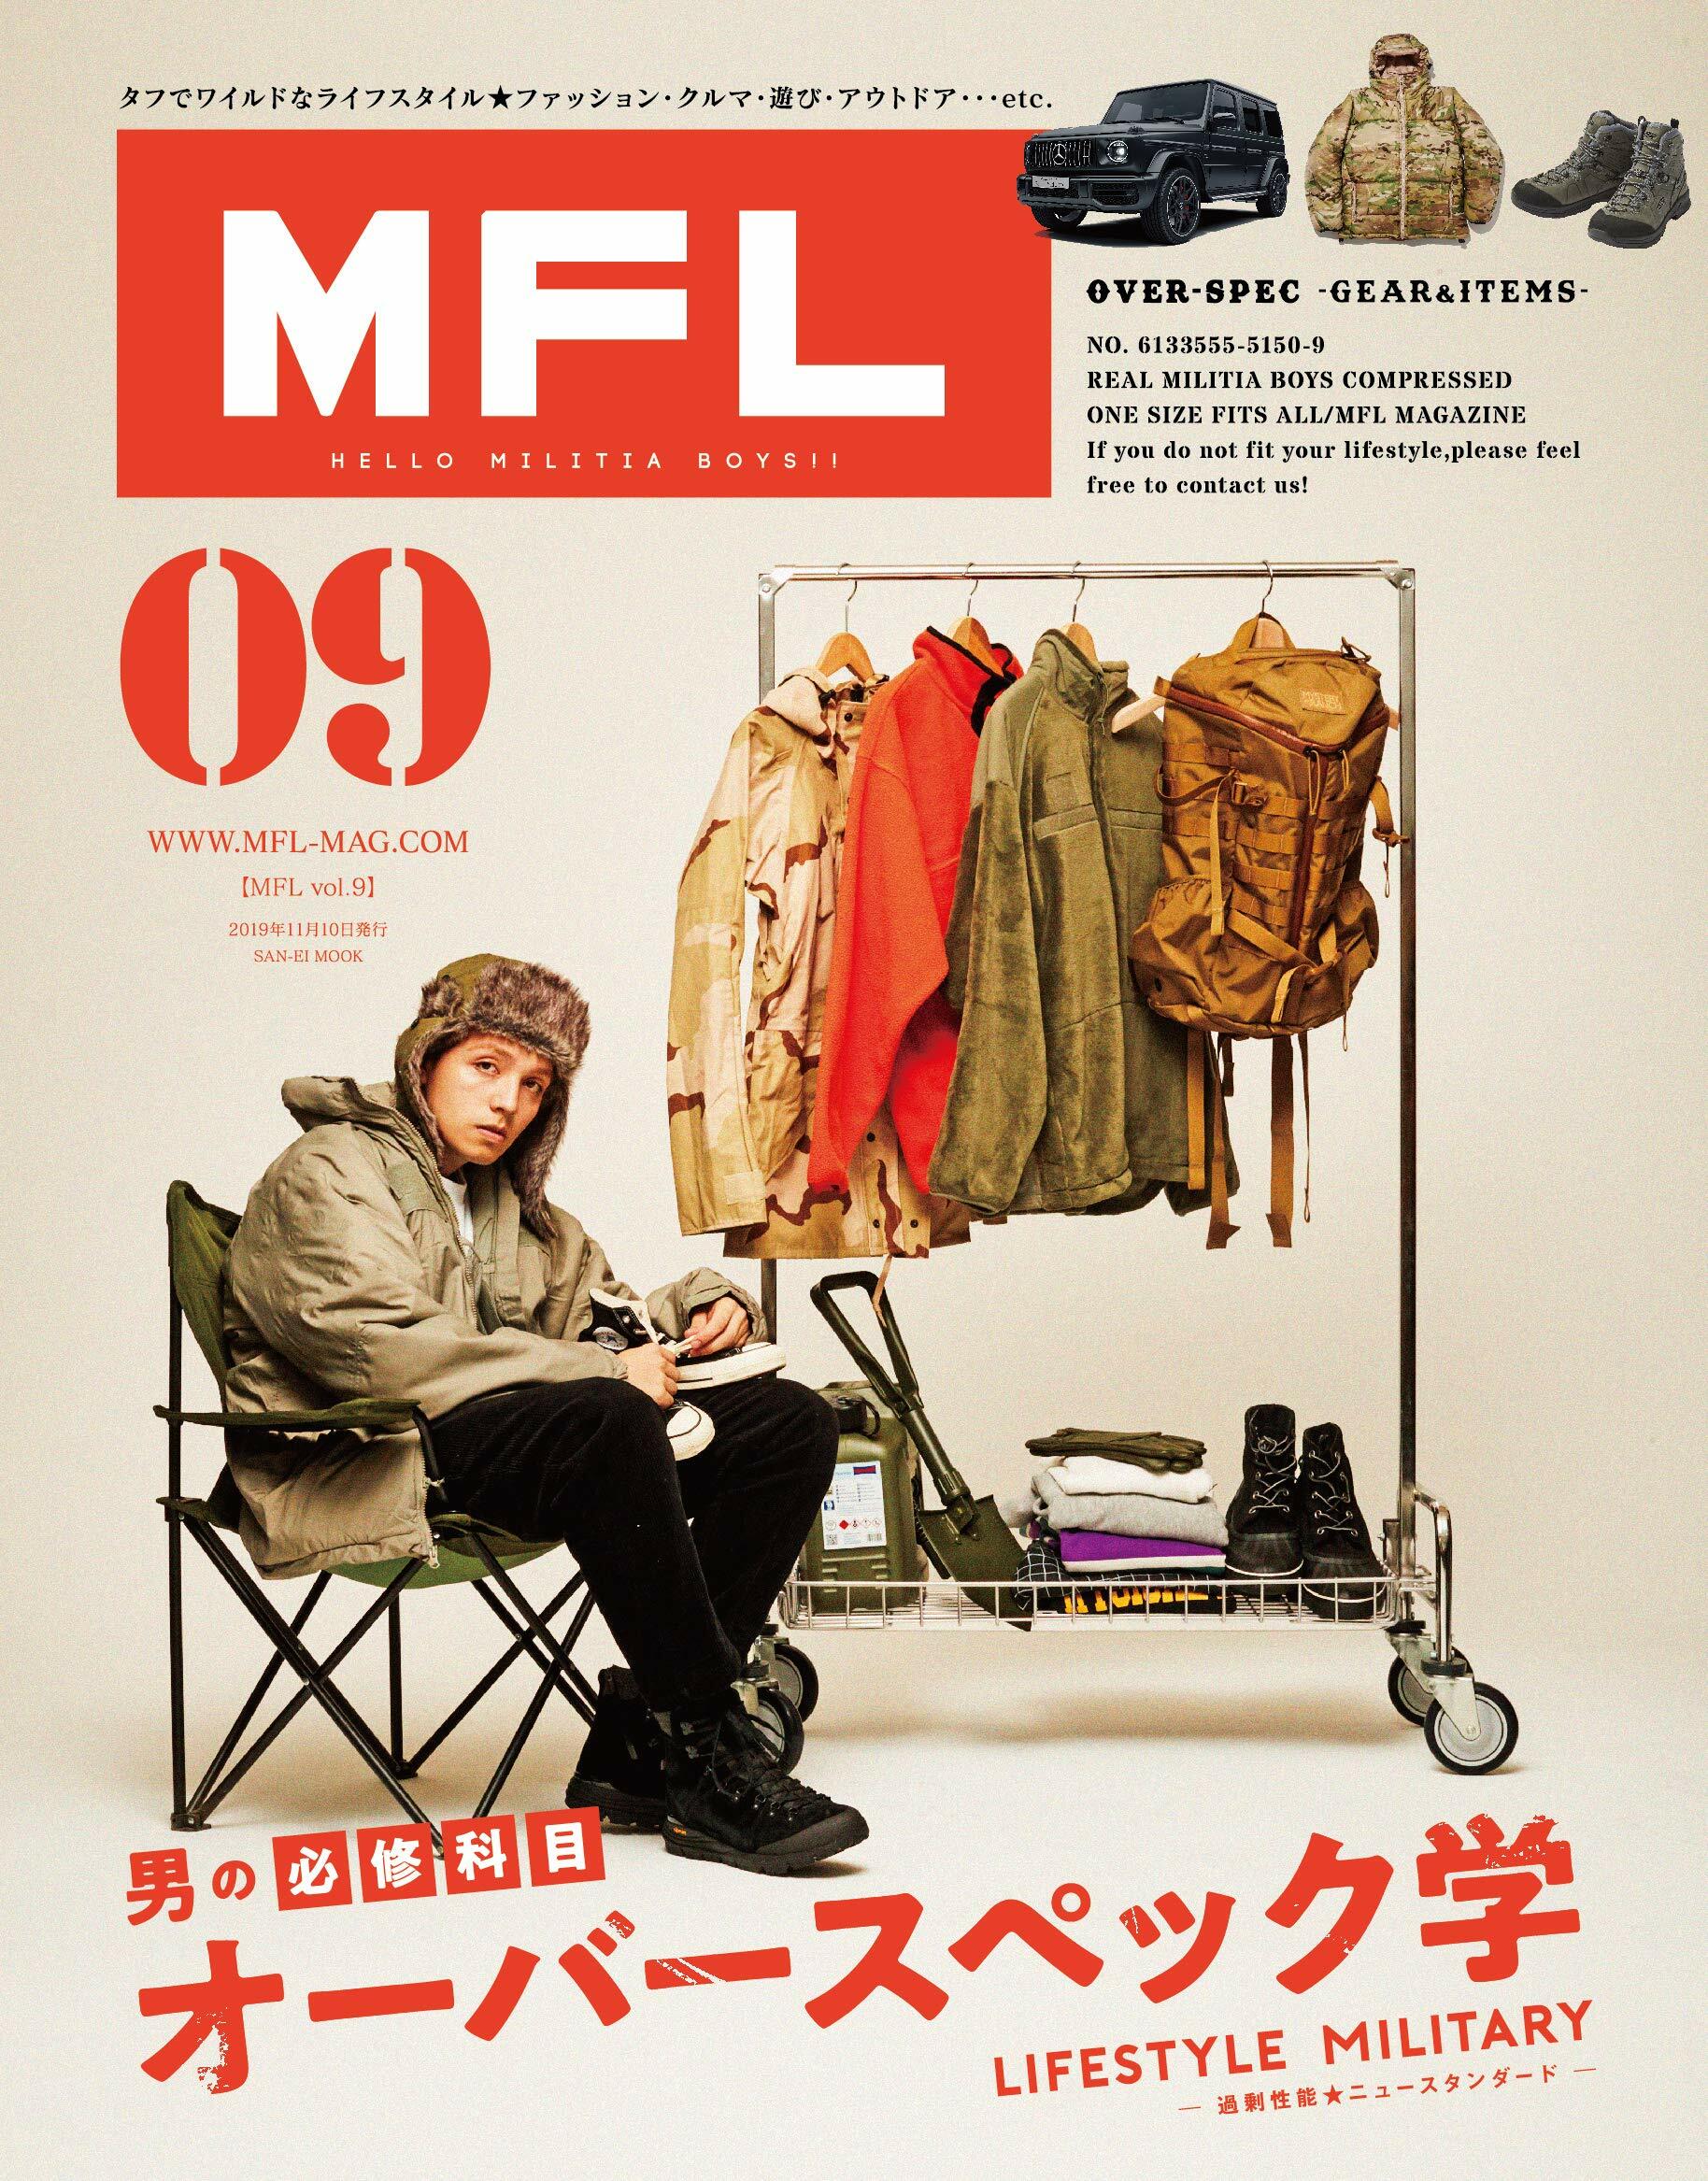 MFL - エム エフ エル - Vol.09 (サンエイムック)